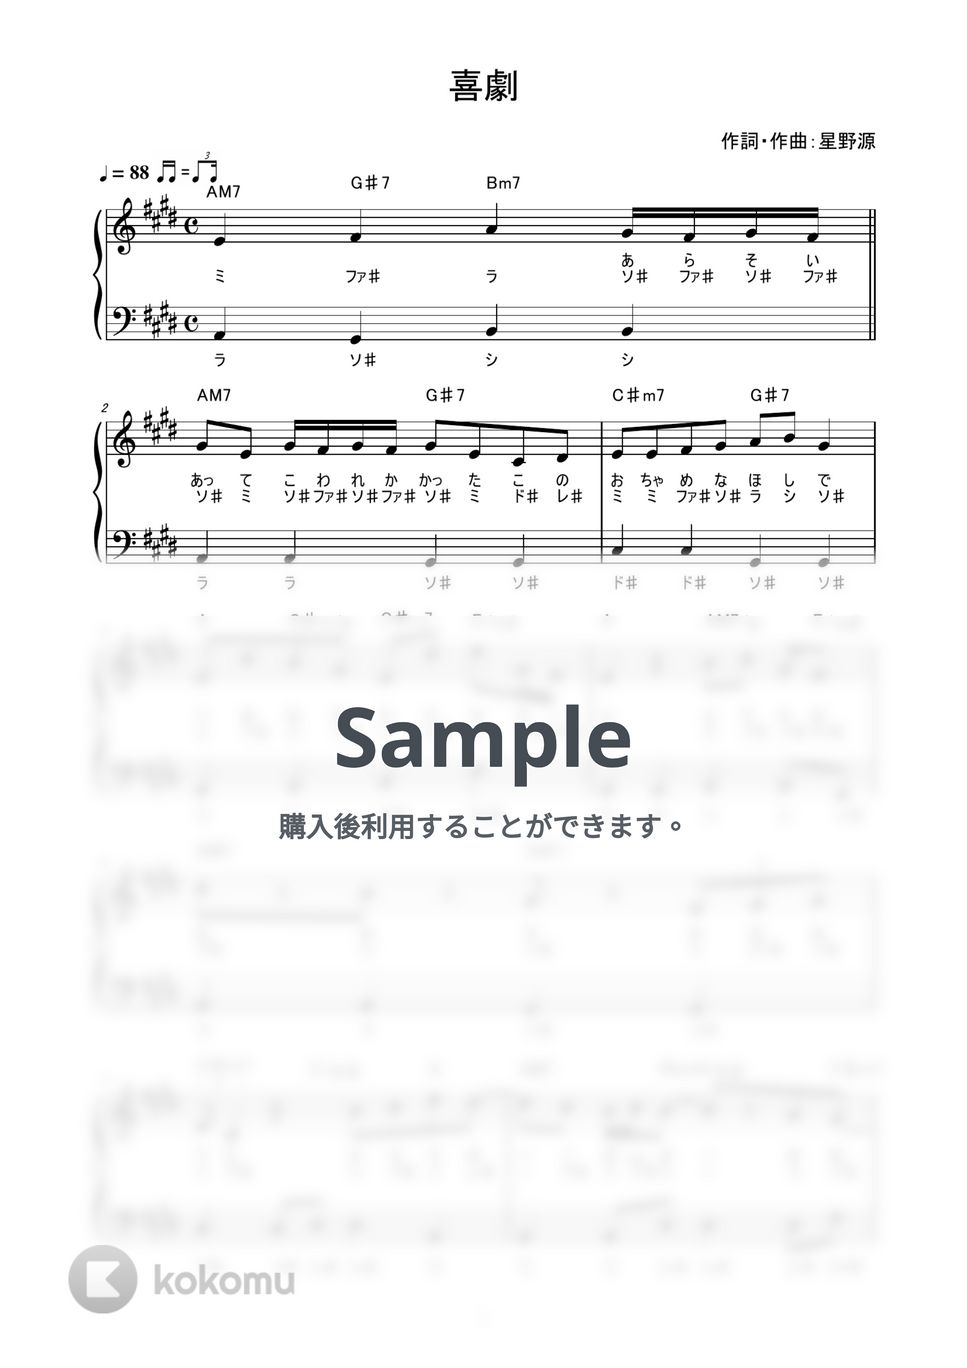 星野源 - 喜劇 (かんたん / 歌詞付き / ドレミ付き / 初心者) by piano.tokyo